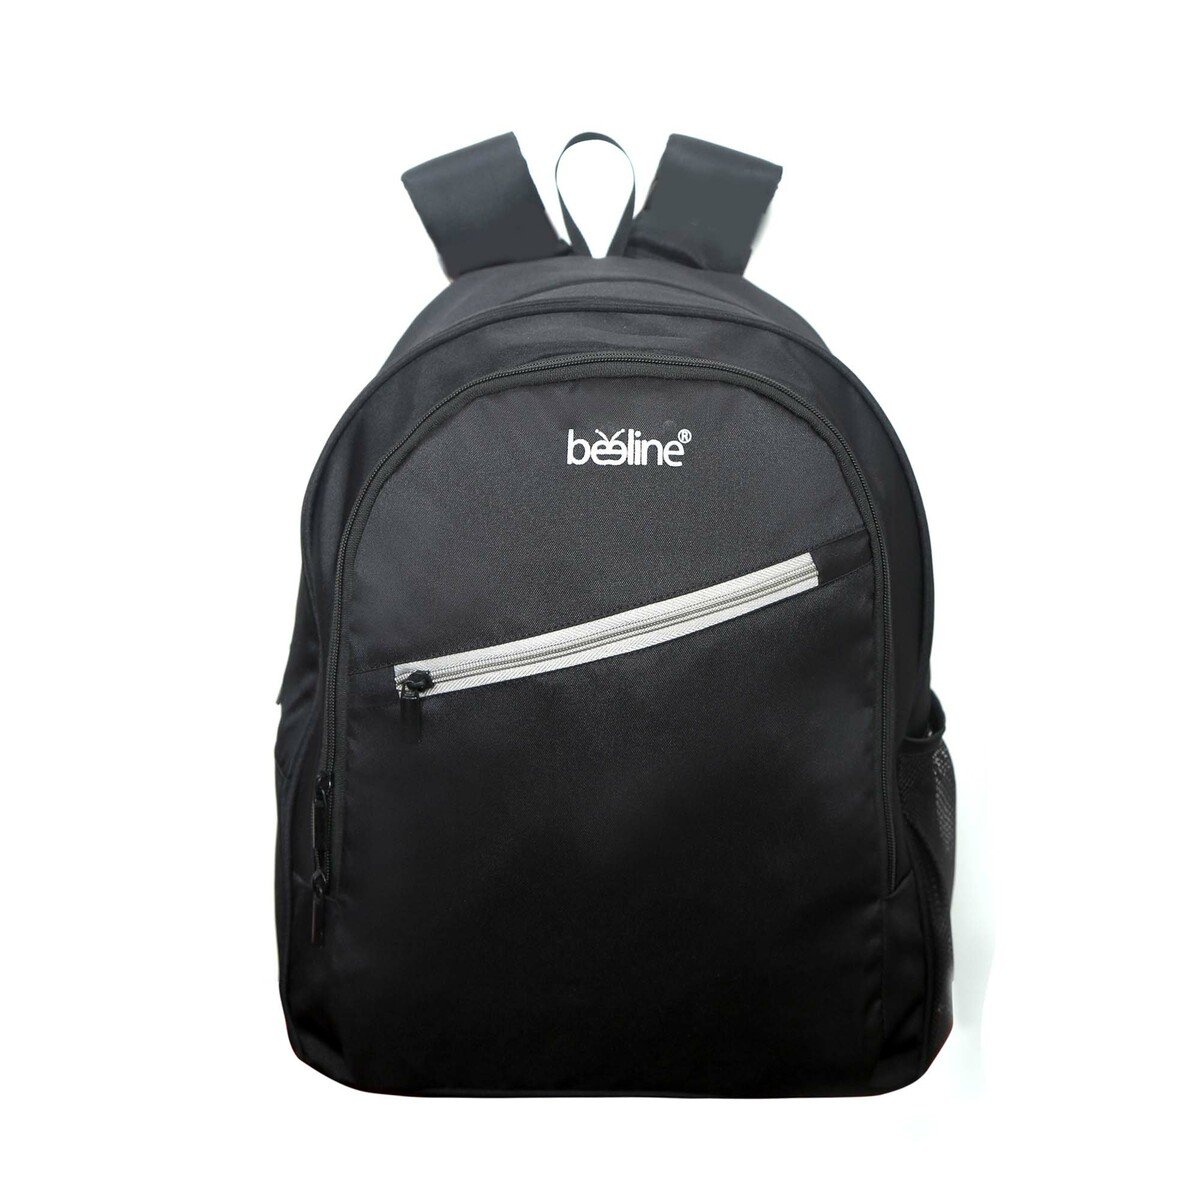 Beeline Laptop Backpack BEE JOY 18inch Assorted Per Pc